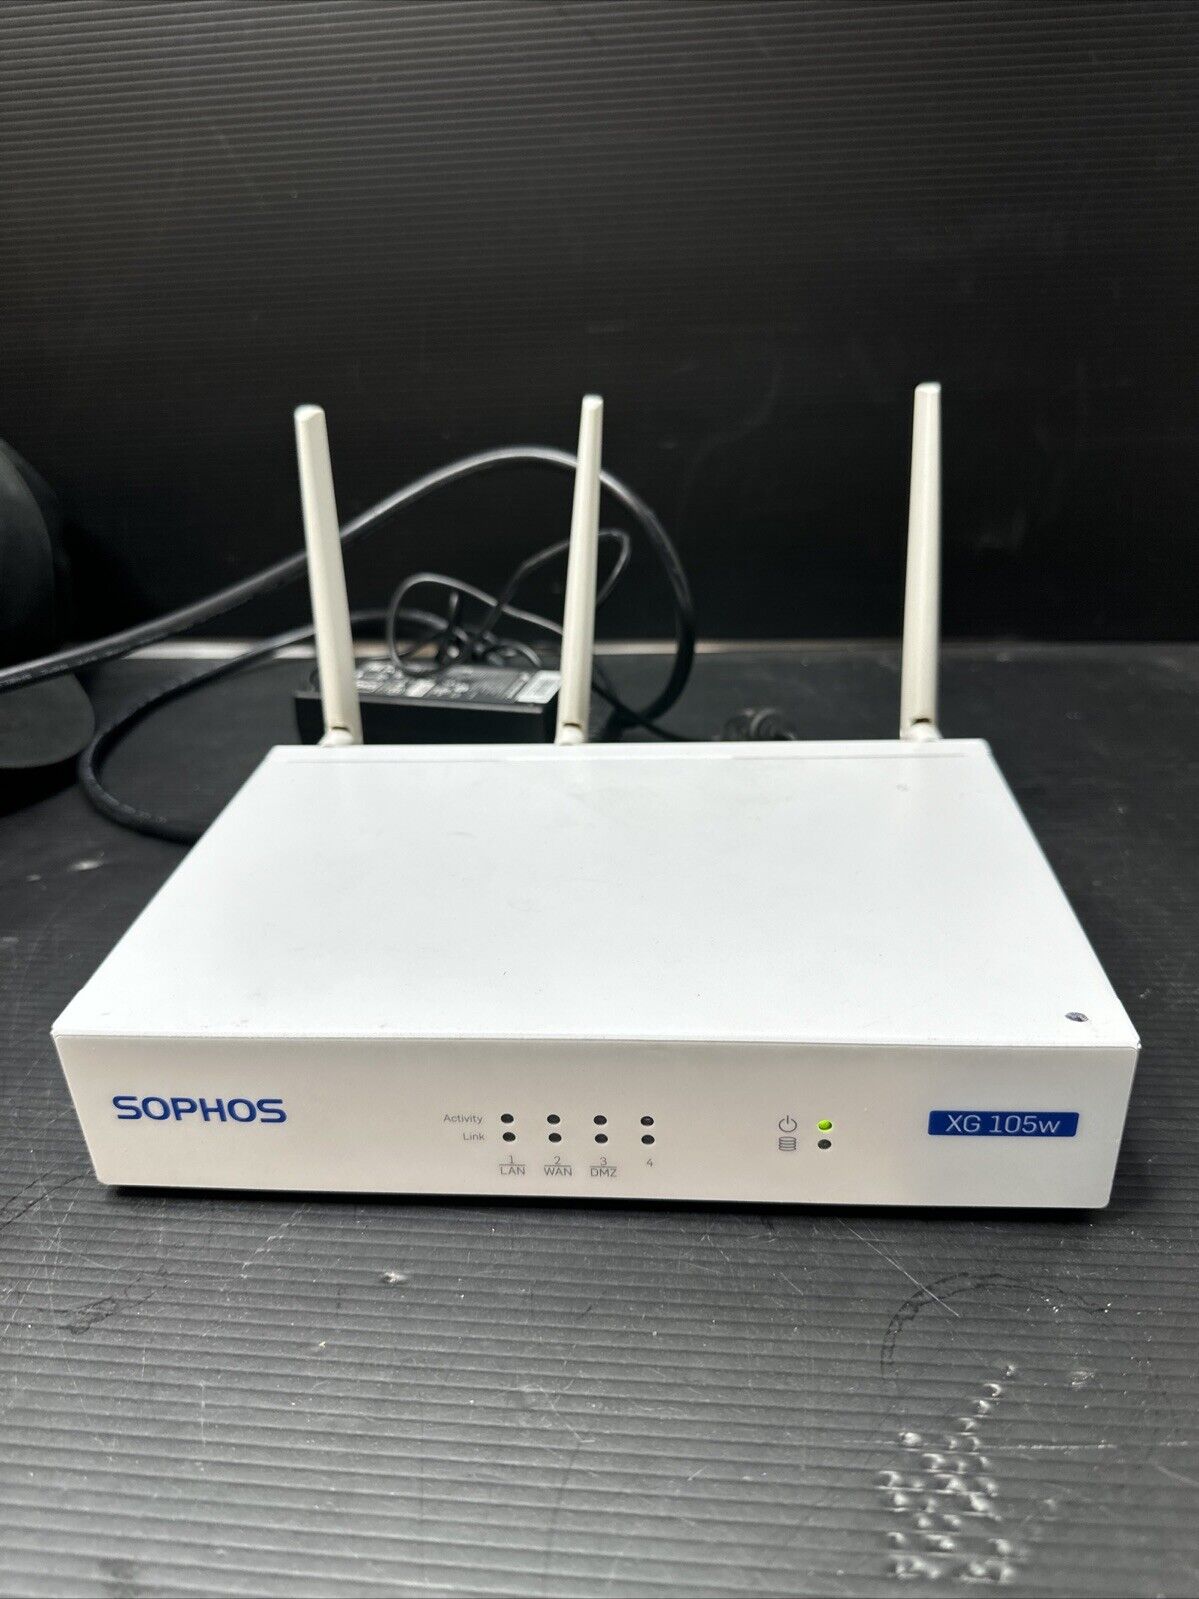 SOPHOS XG 105w Network Security Appliance